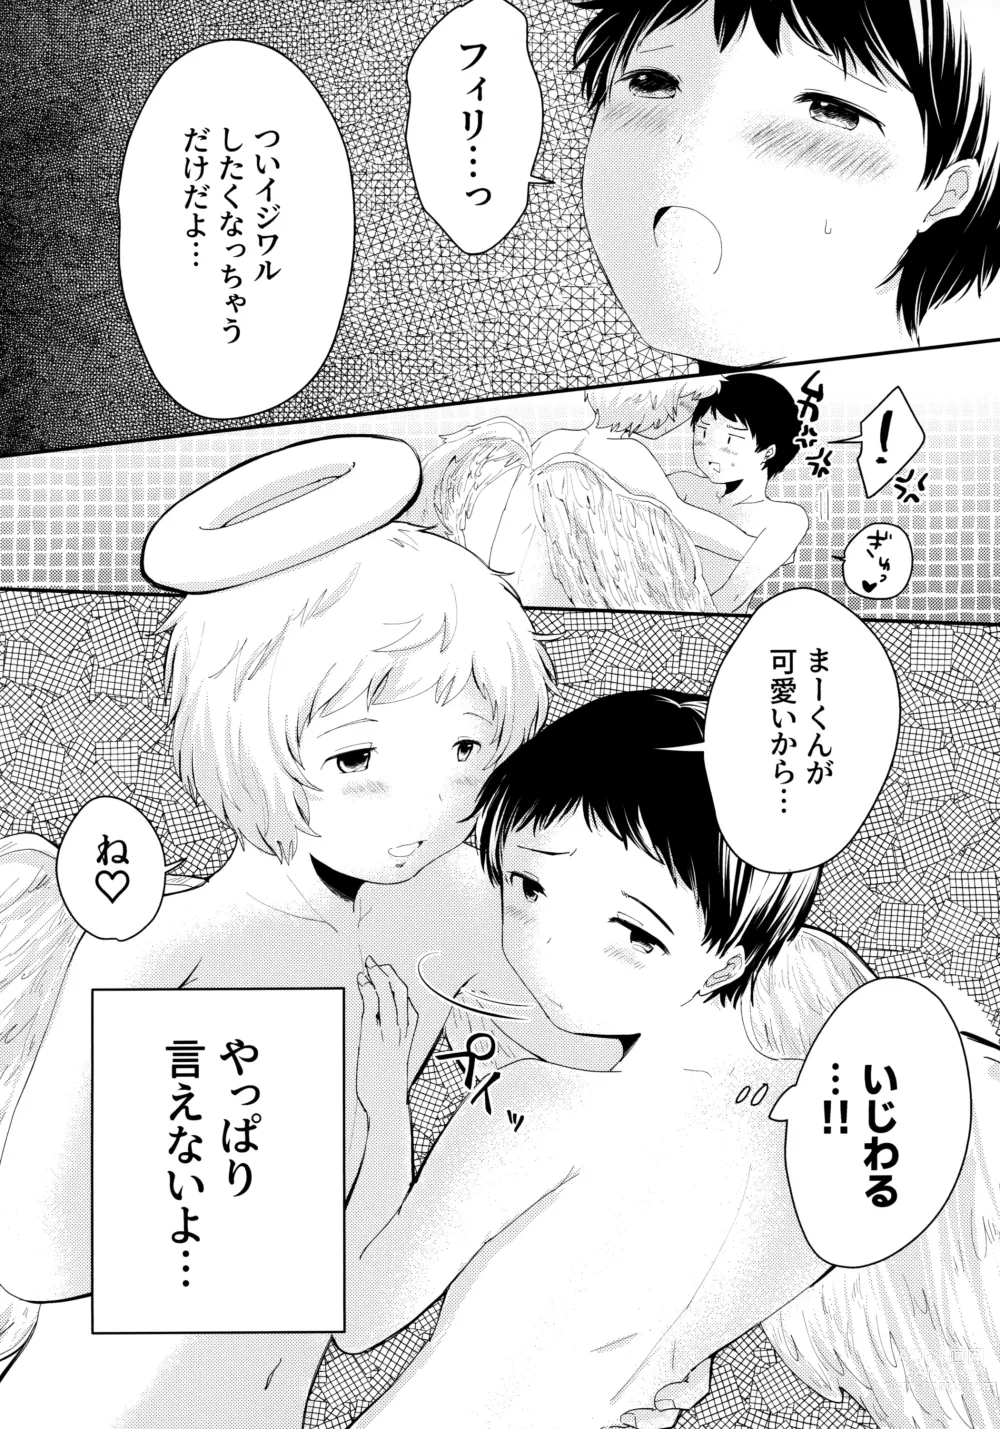 Page 6 of doujinshi Tenshinohane Yasume